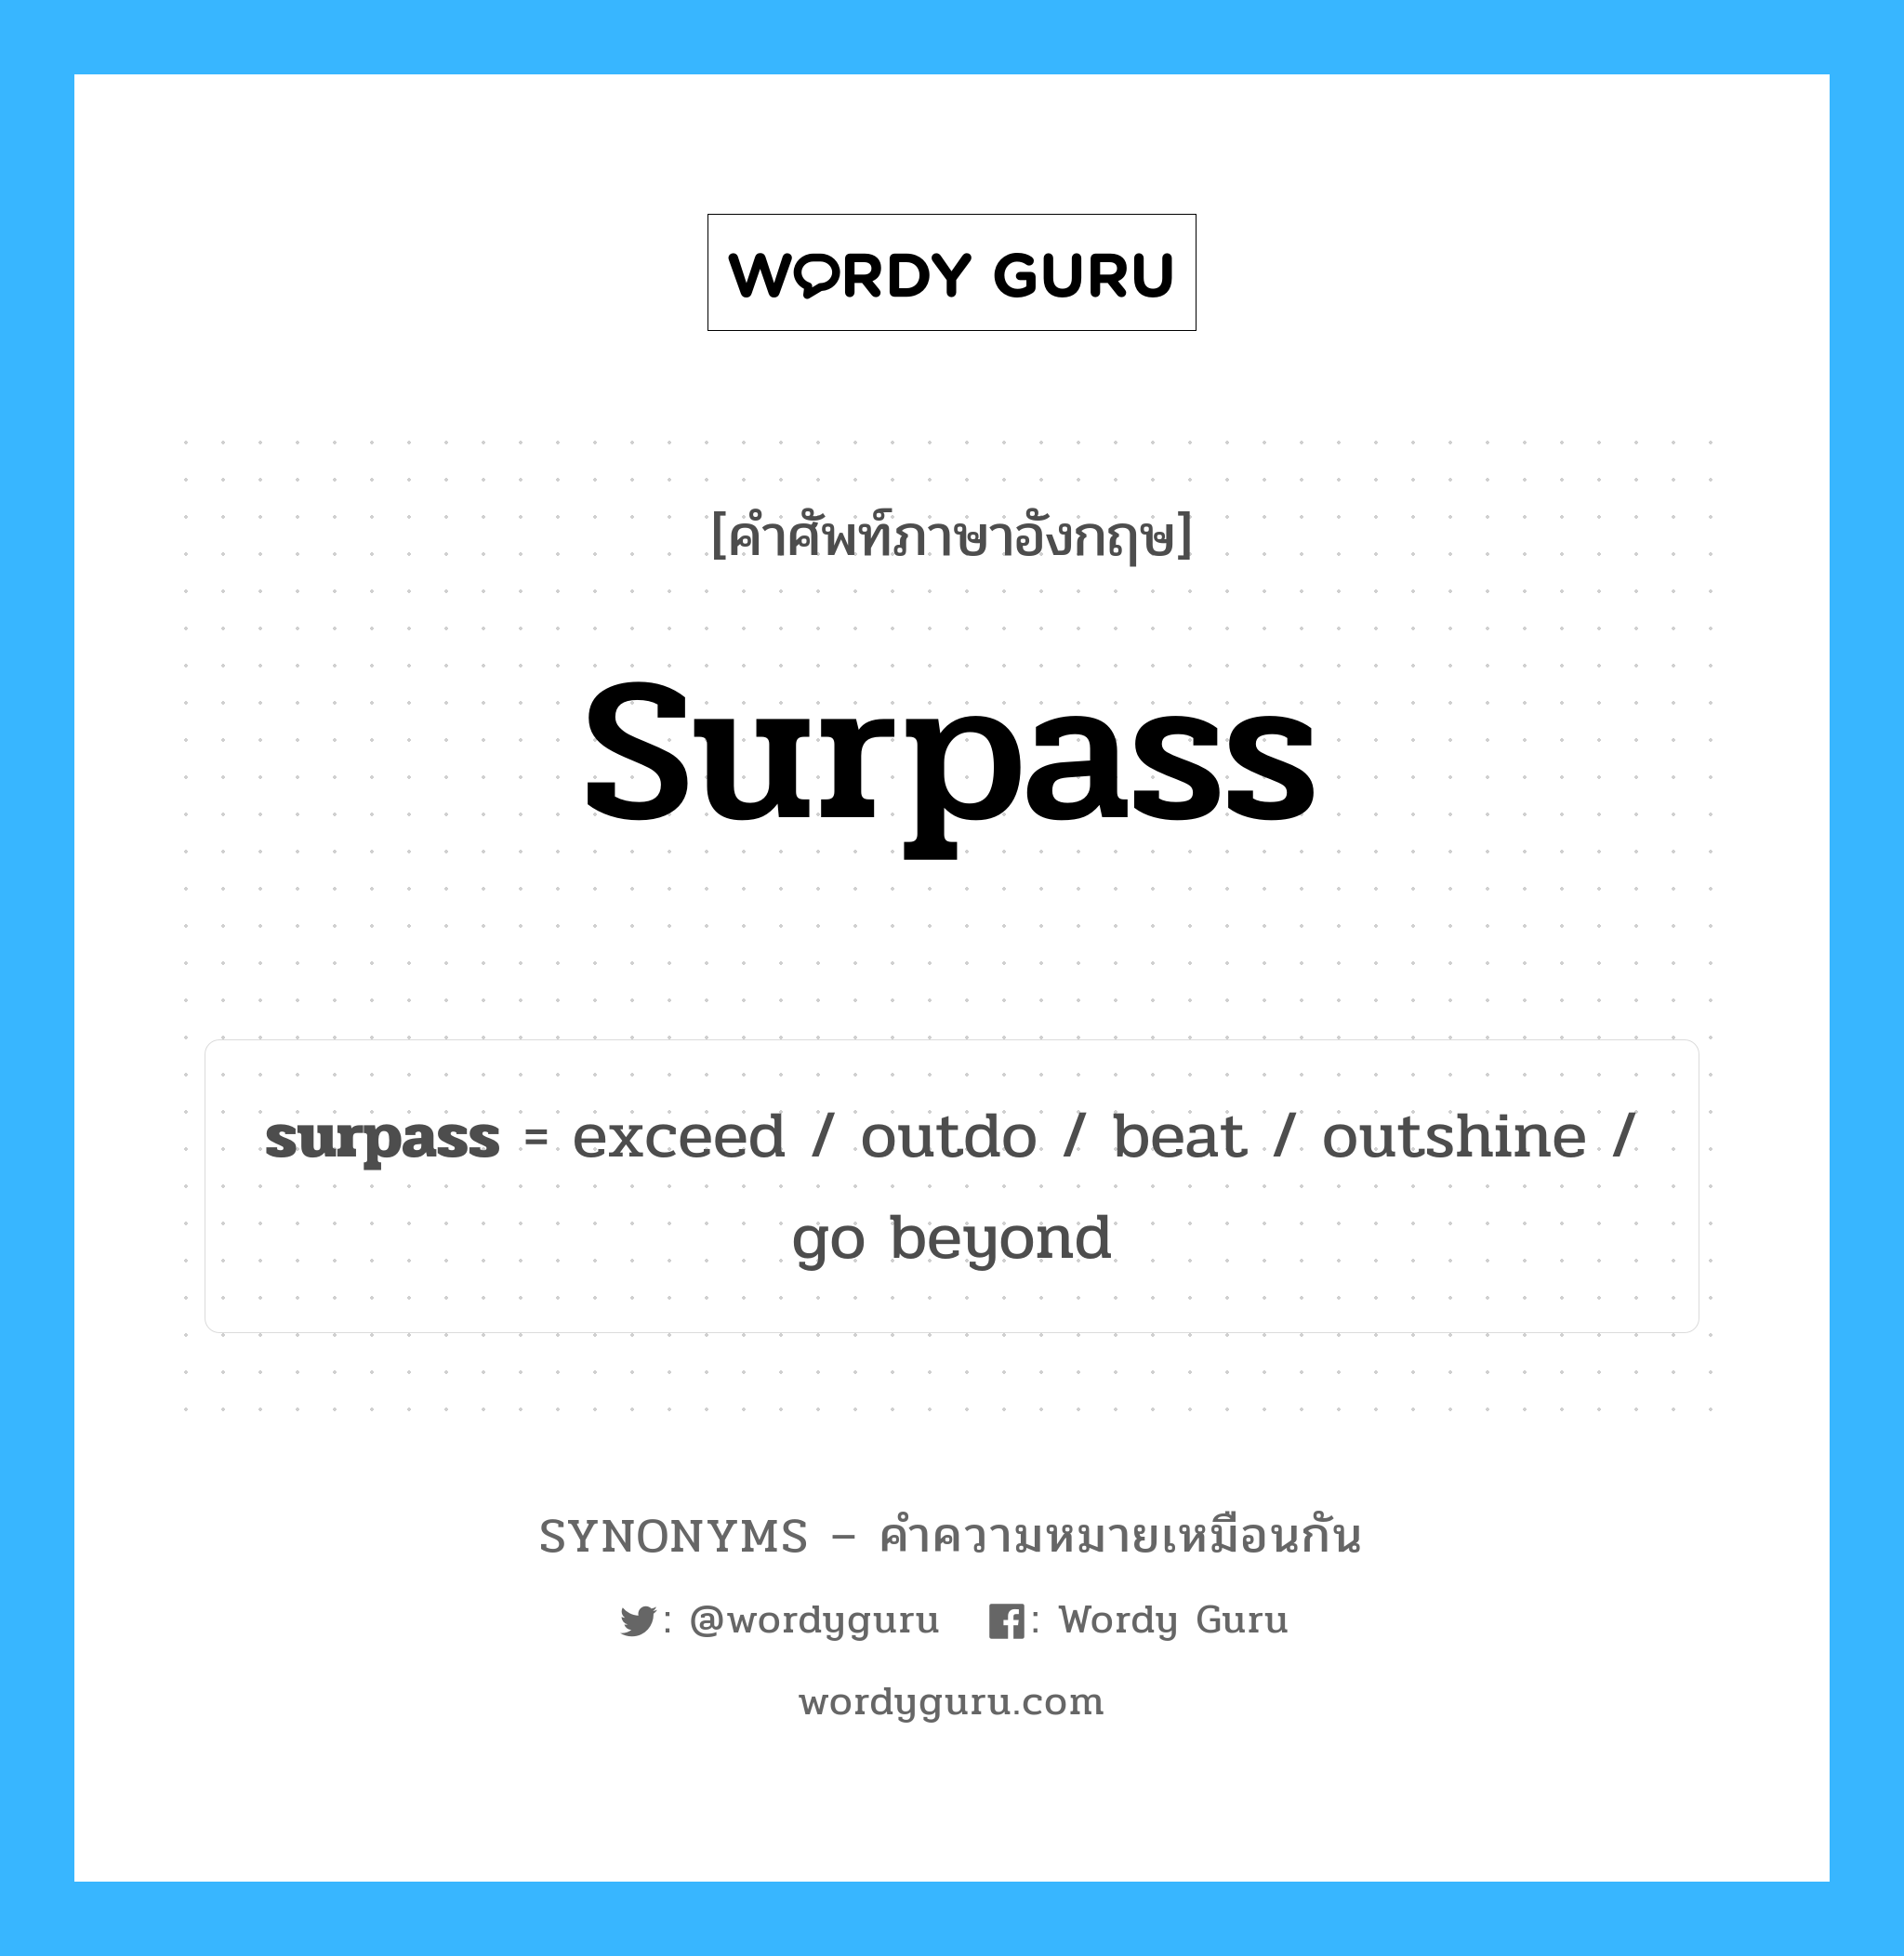 beat เป็นหนึ่งใน surpass และมีคำอื่น ๆ อีกดังนี้, คำศัพท์ภาษาอังกฤษ beat ความหมายคล้ายกันกับ surpass แปลว่า เอาชนะ หมวด surpass